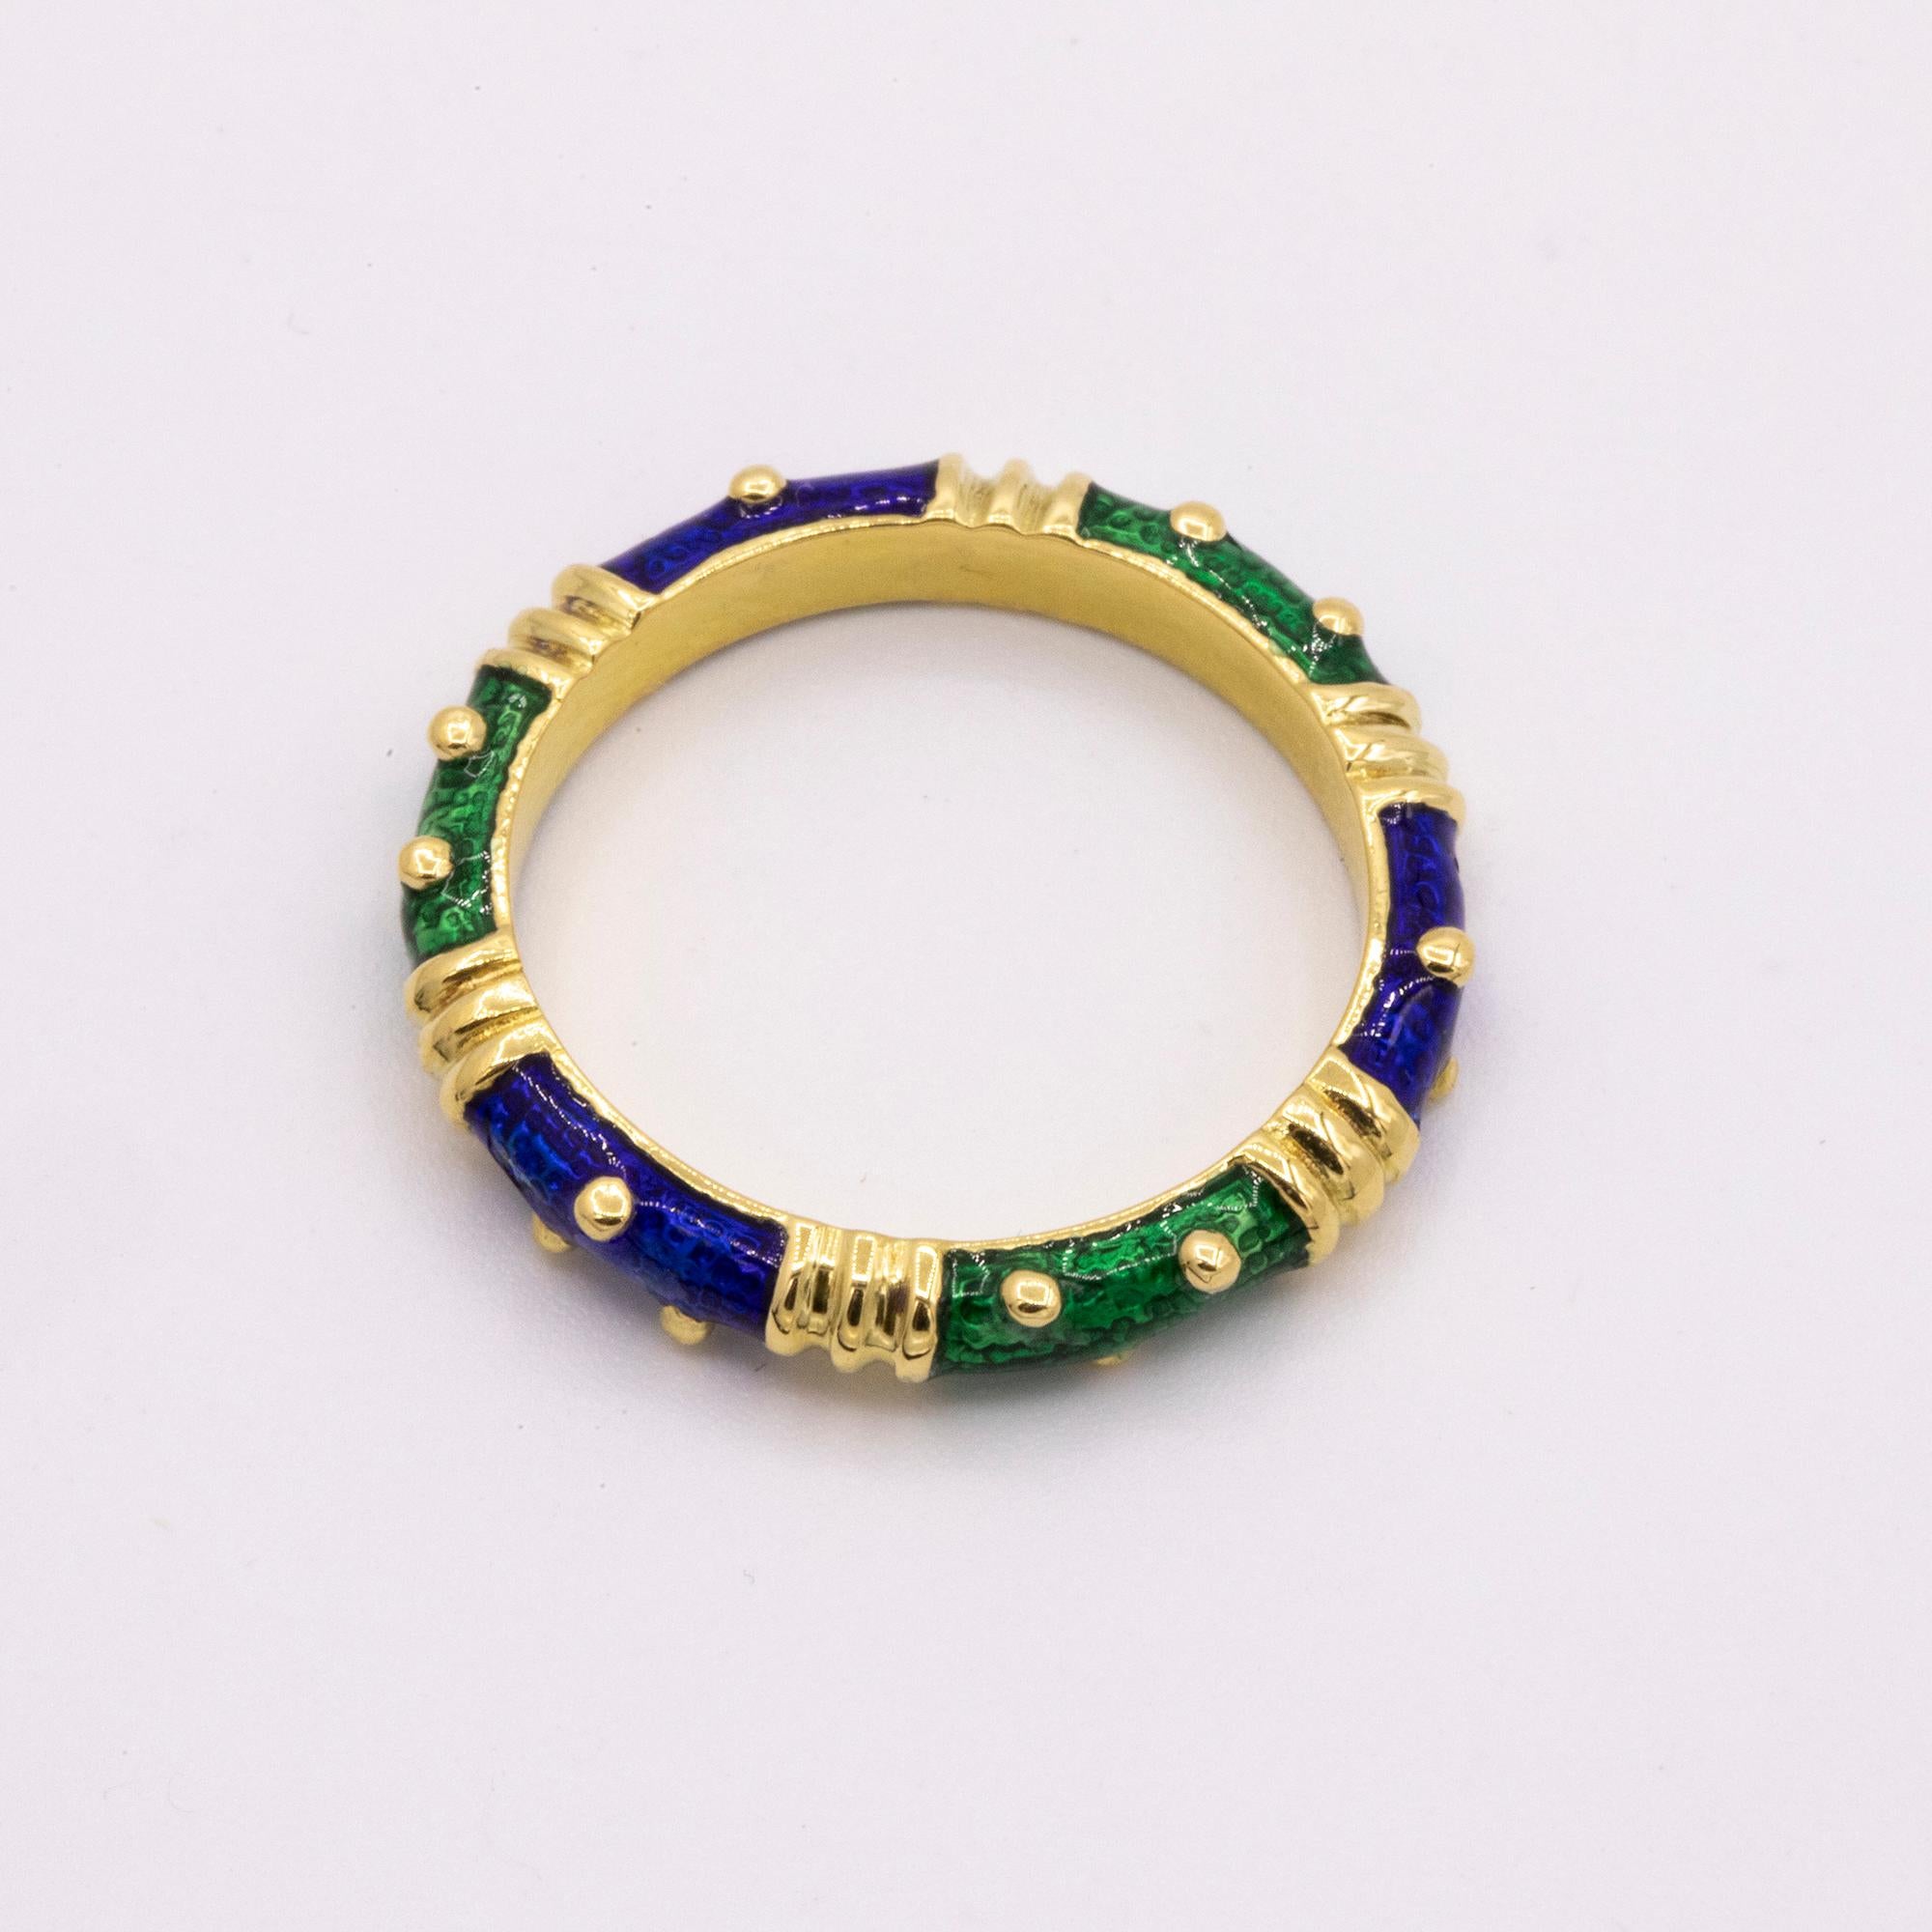 18 Karat Yellow Gold Hidalgo Designer ring. Green & Blue enamel work. This ring weighs 2.5 dwt in total.